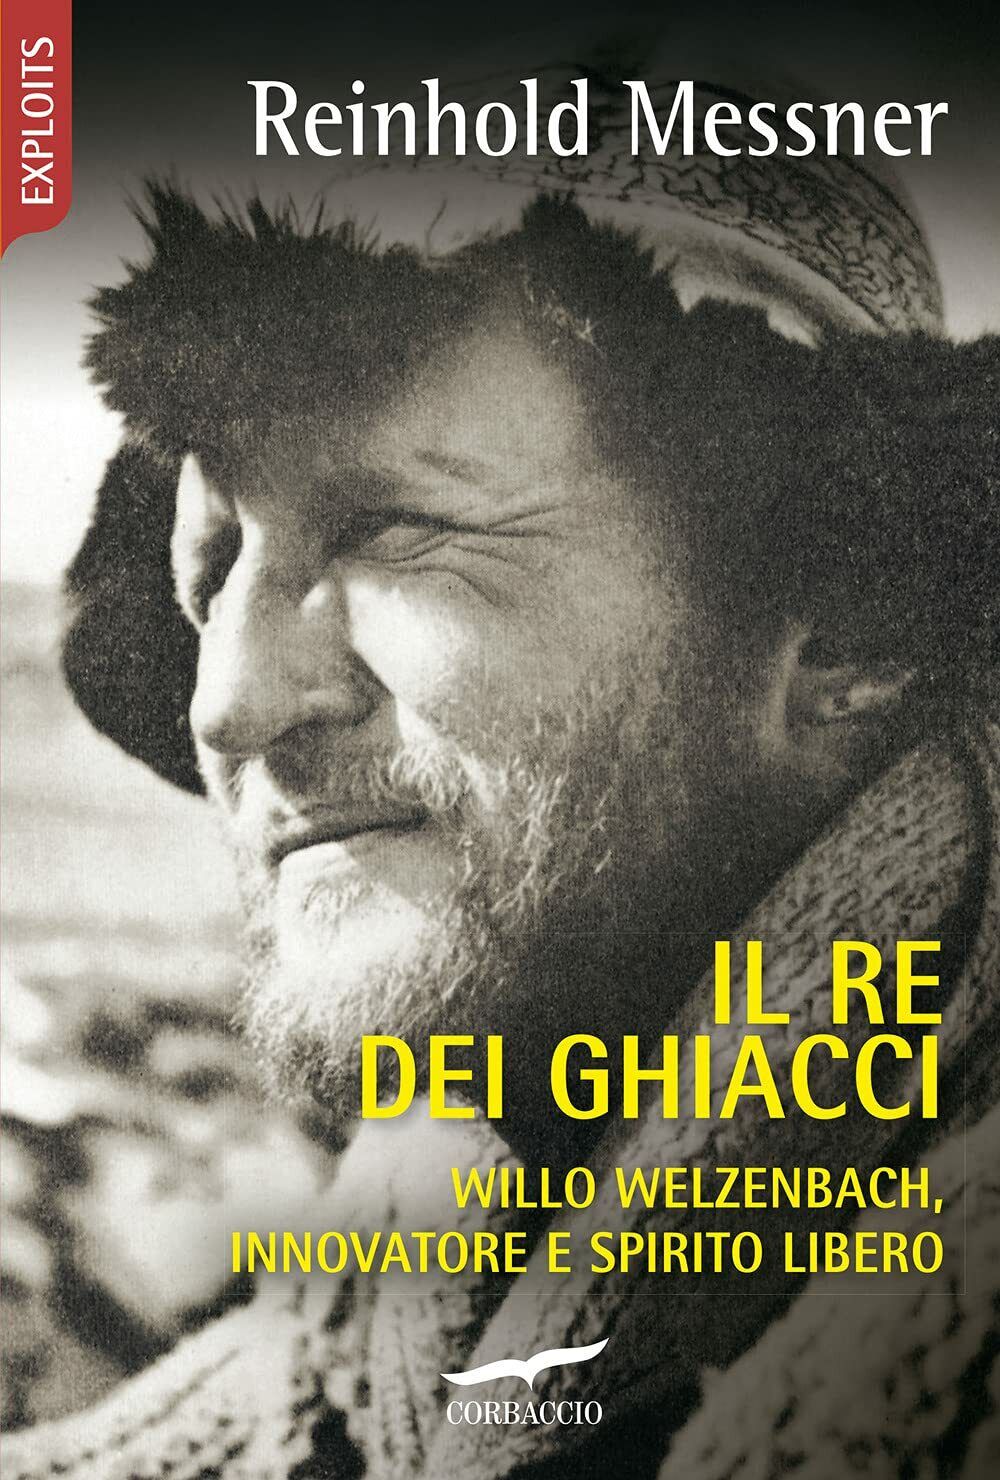 Il re dei ghiacci - Reinhold Messner - Corbaccio, 2021